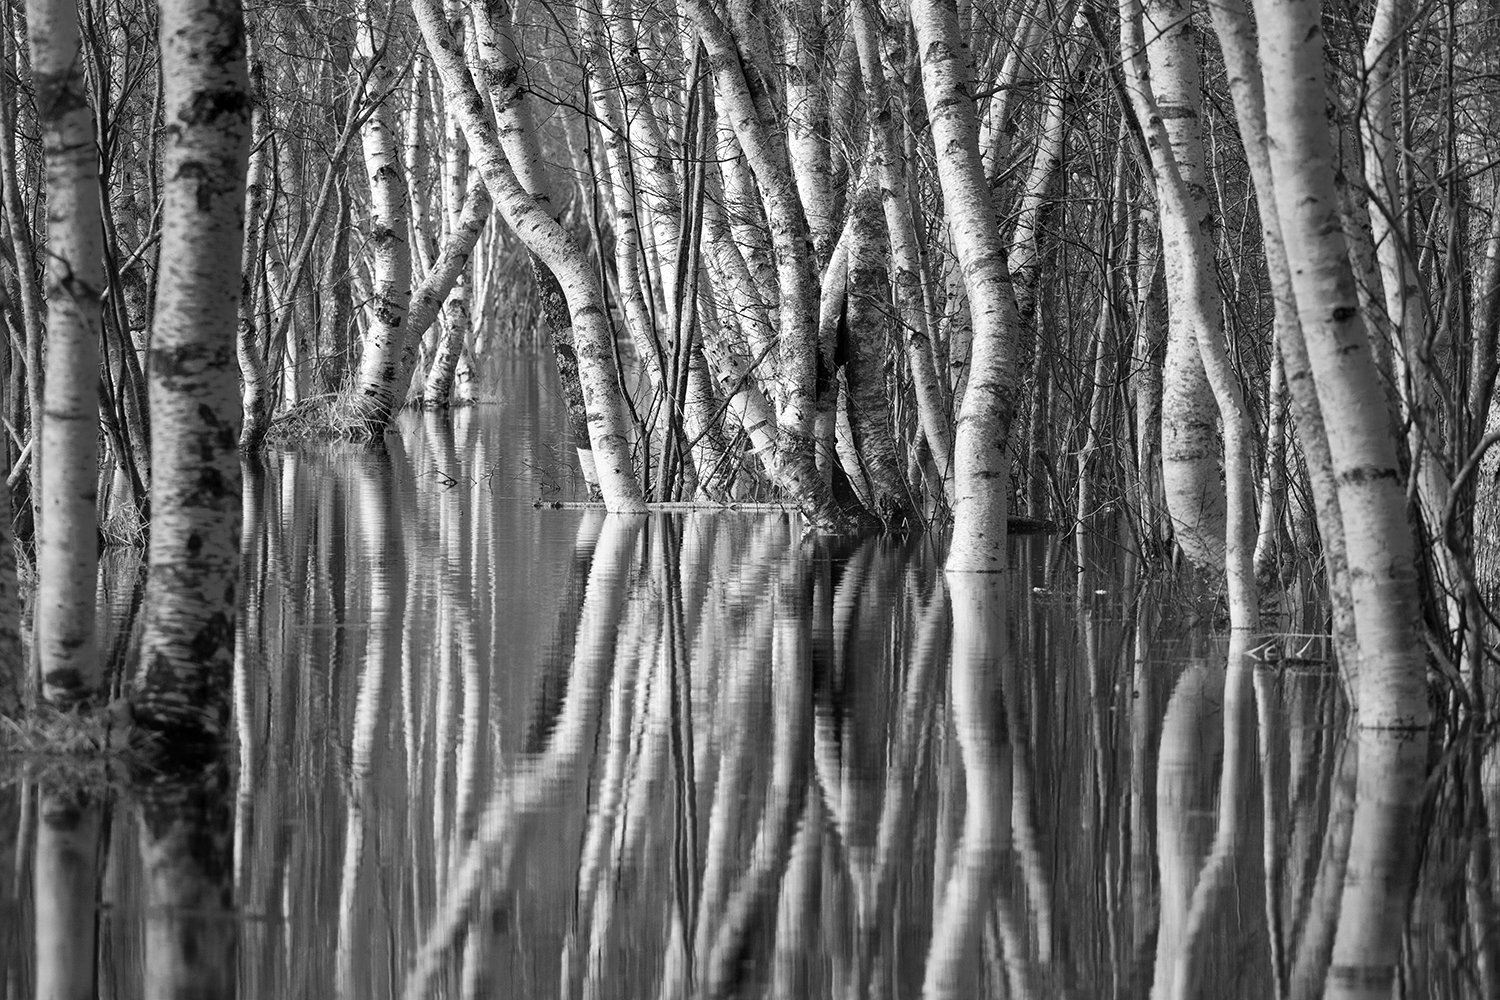 NZ7_4213 Flooded birches x1500.jpg